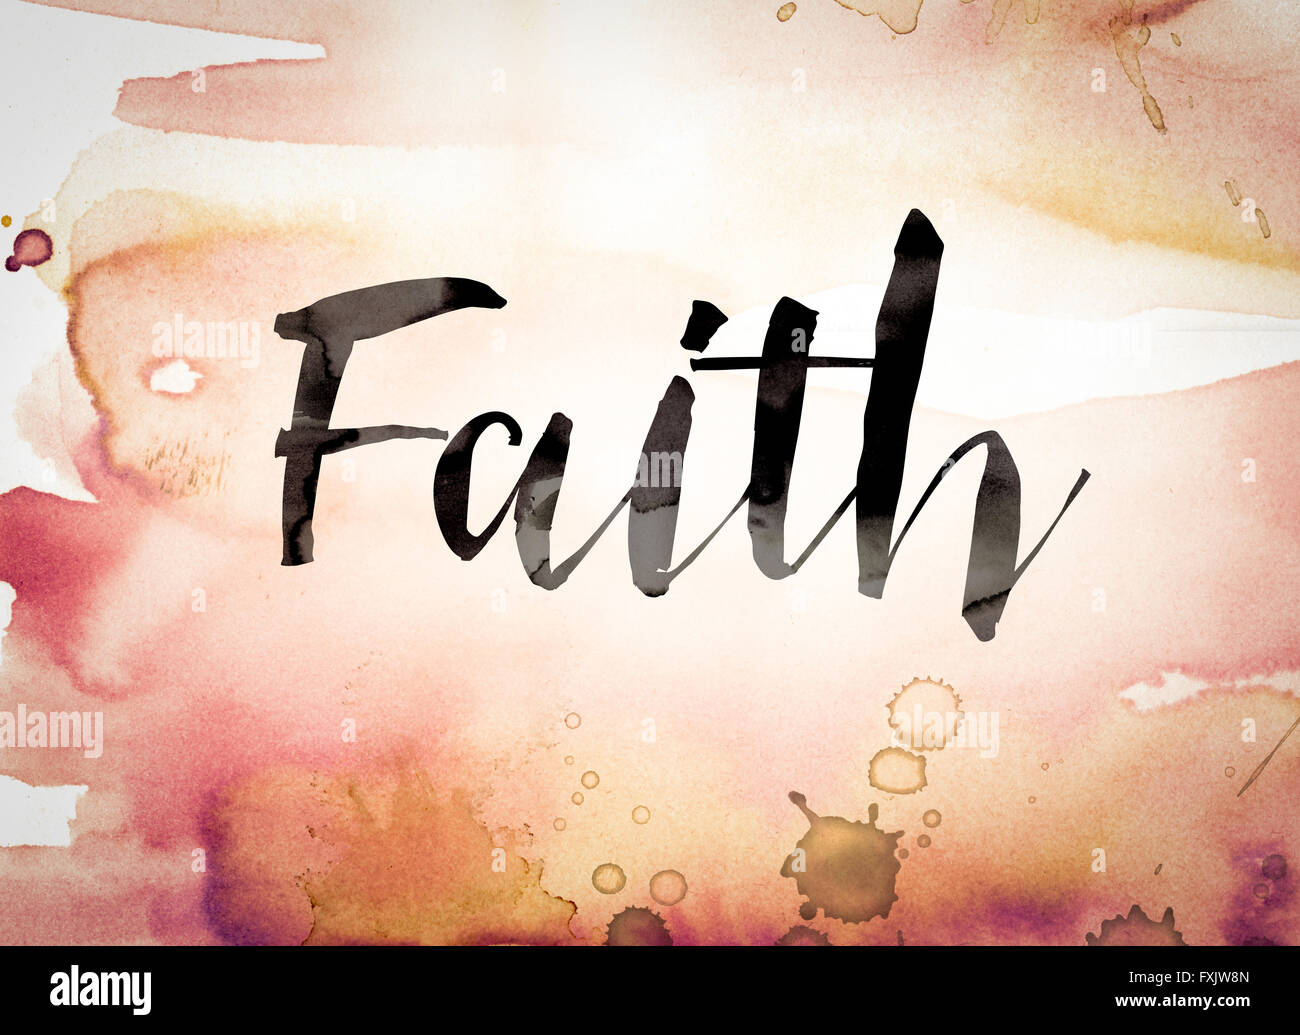 La parola "fede" scritta in vernice nera su un variopinto acquerello lavato sfondo. Foto Stock